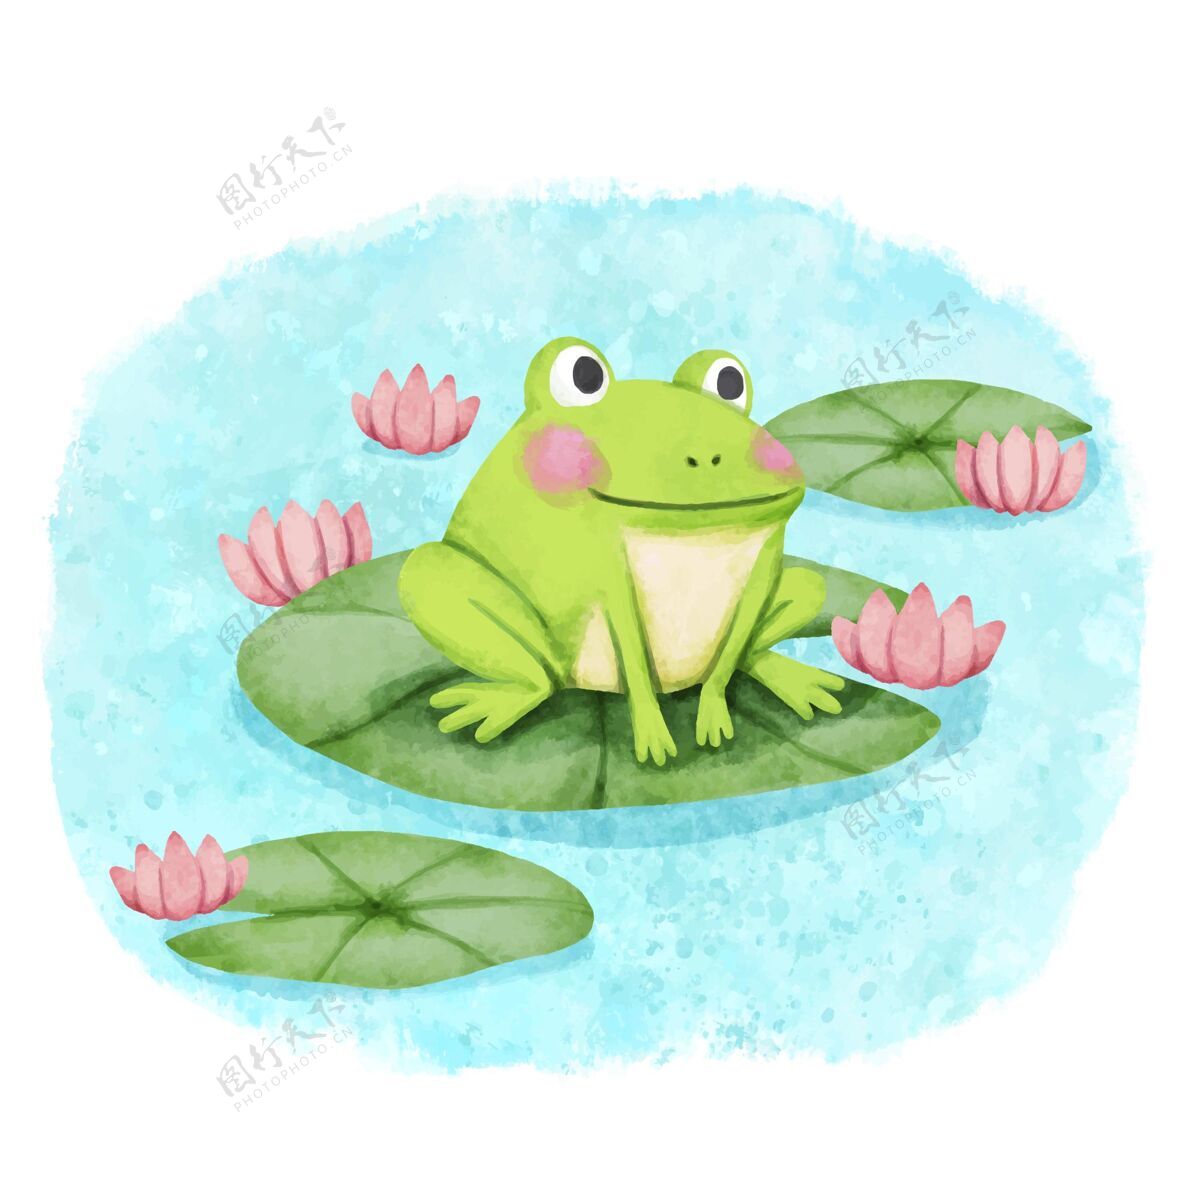 自然手绘可爱青蛙插图小动物可爱